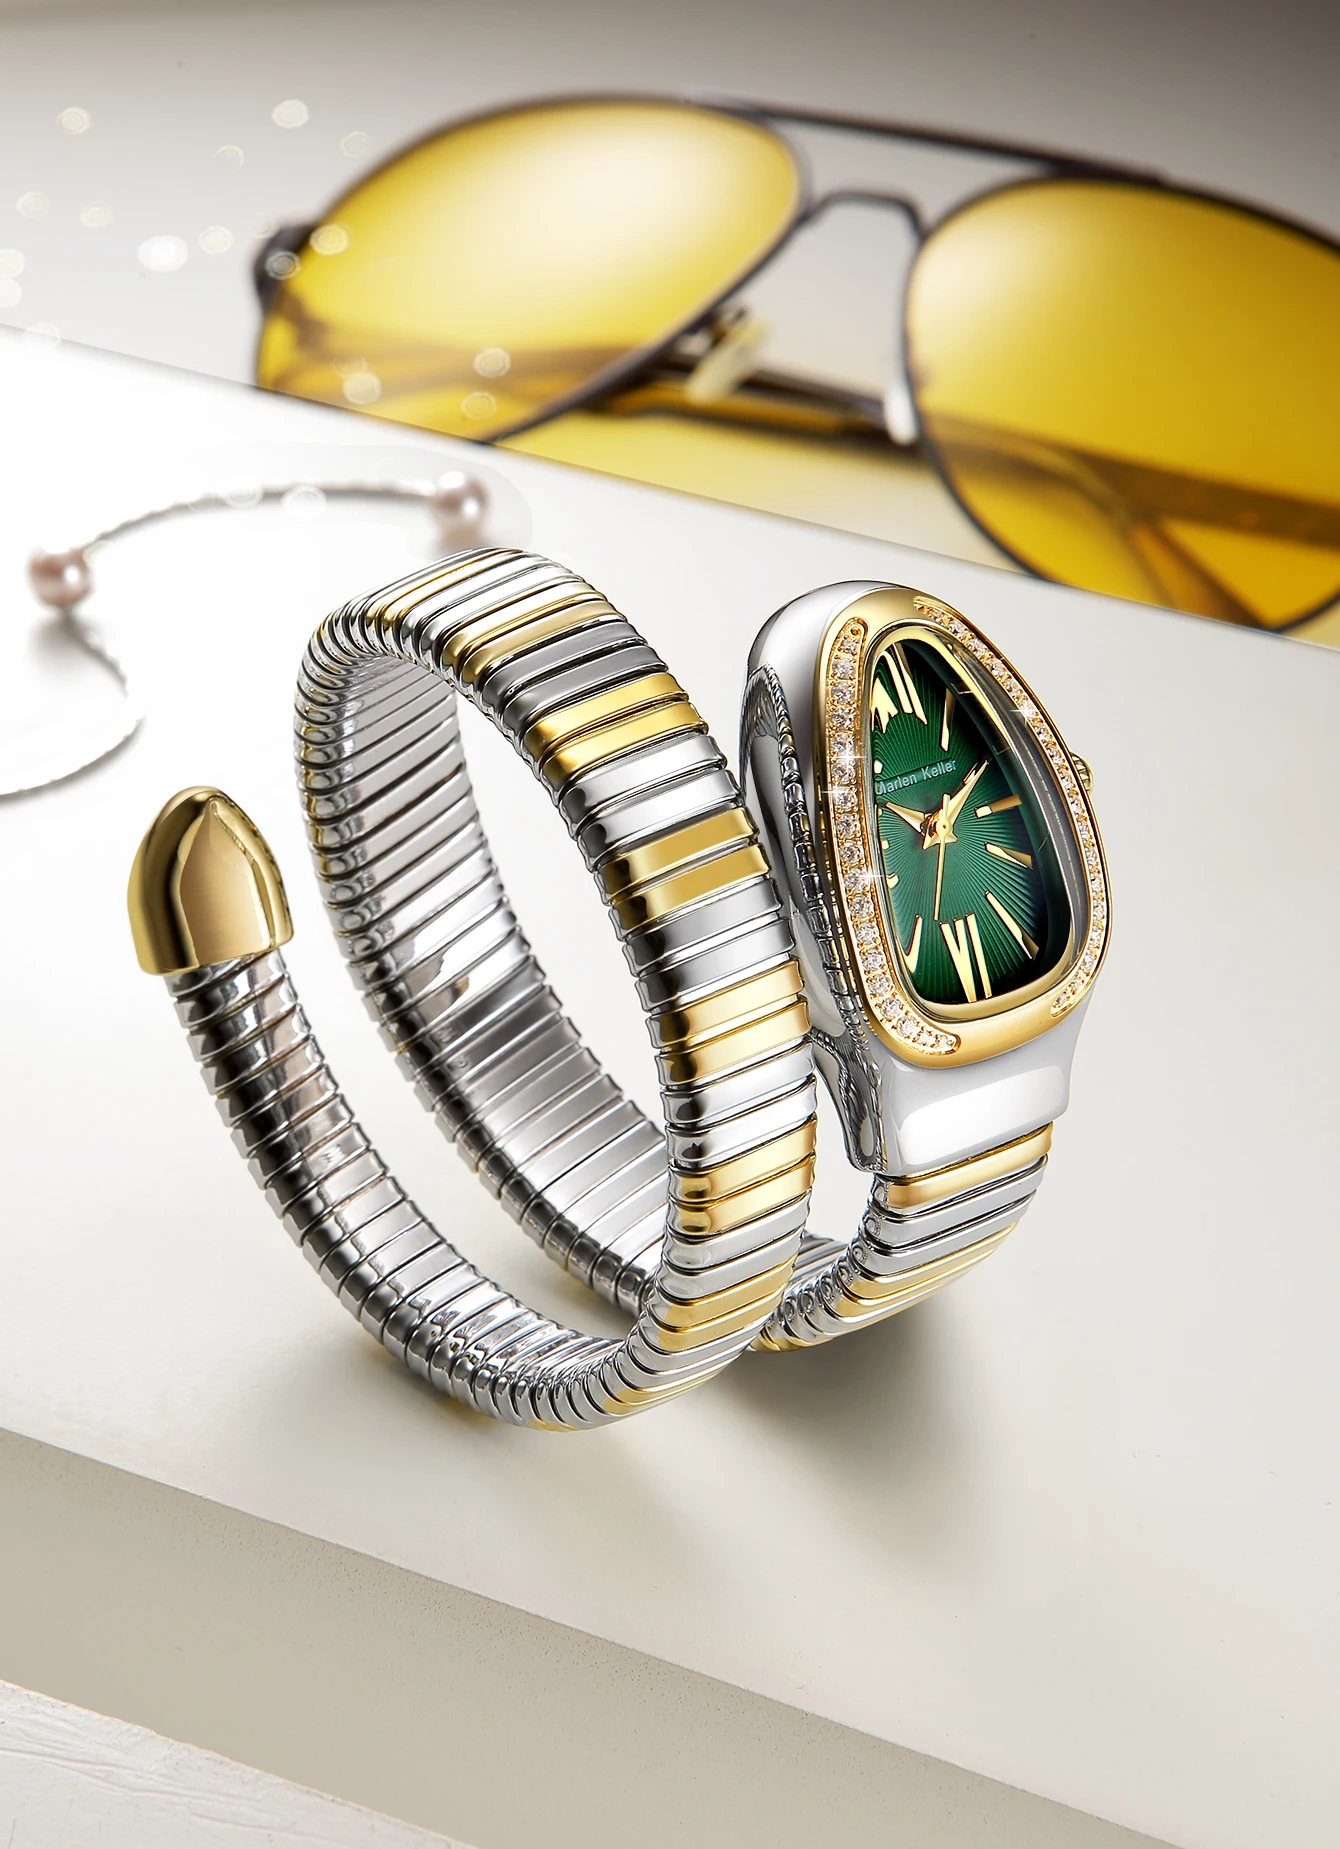 Marlen keller jam tangan kuarsa mewah dengan berlian imitasi berbentuk ular jam tangan populer untuk mode wanita